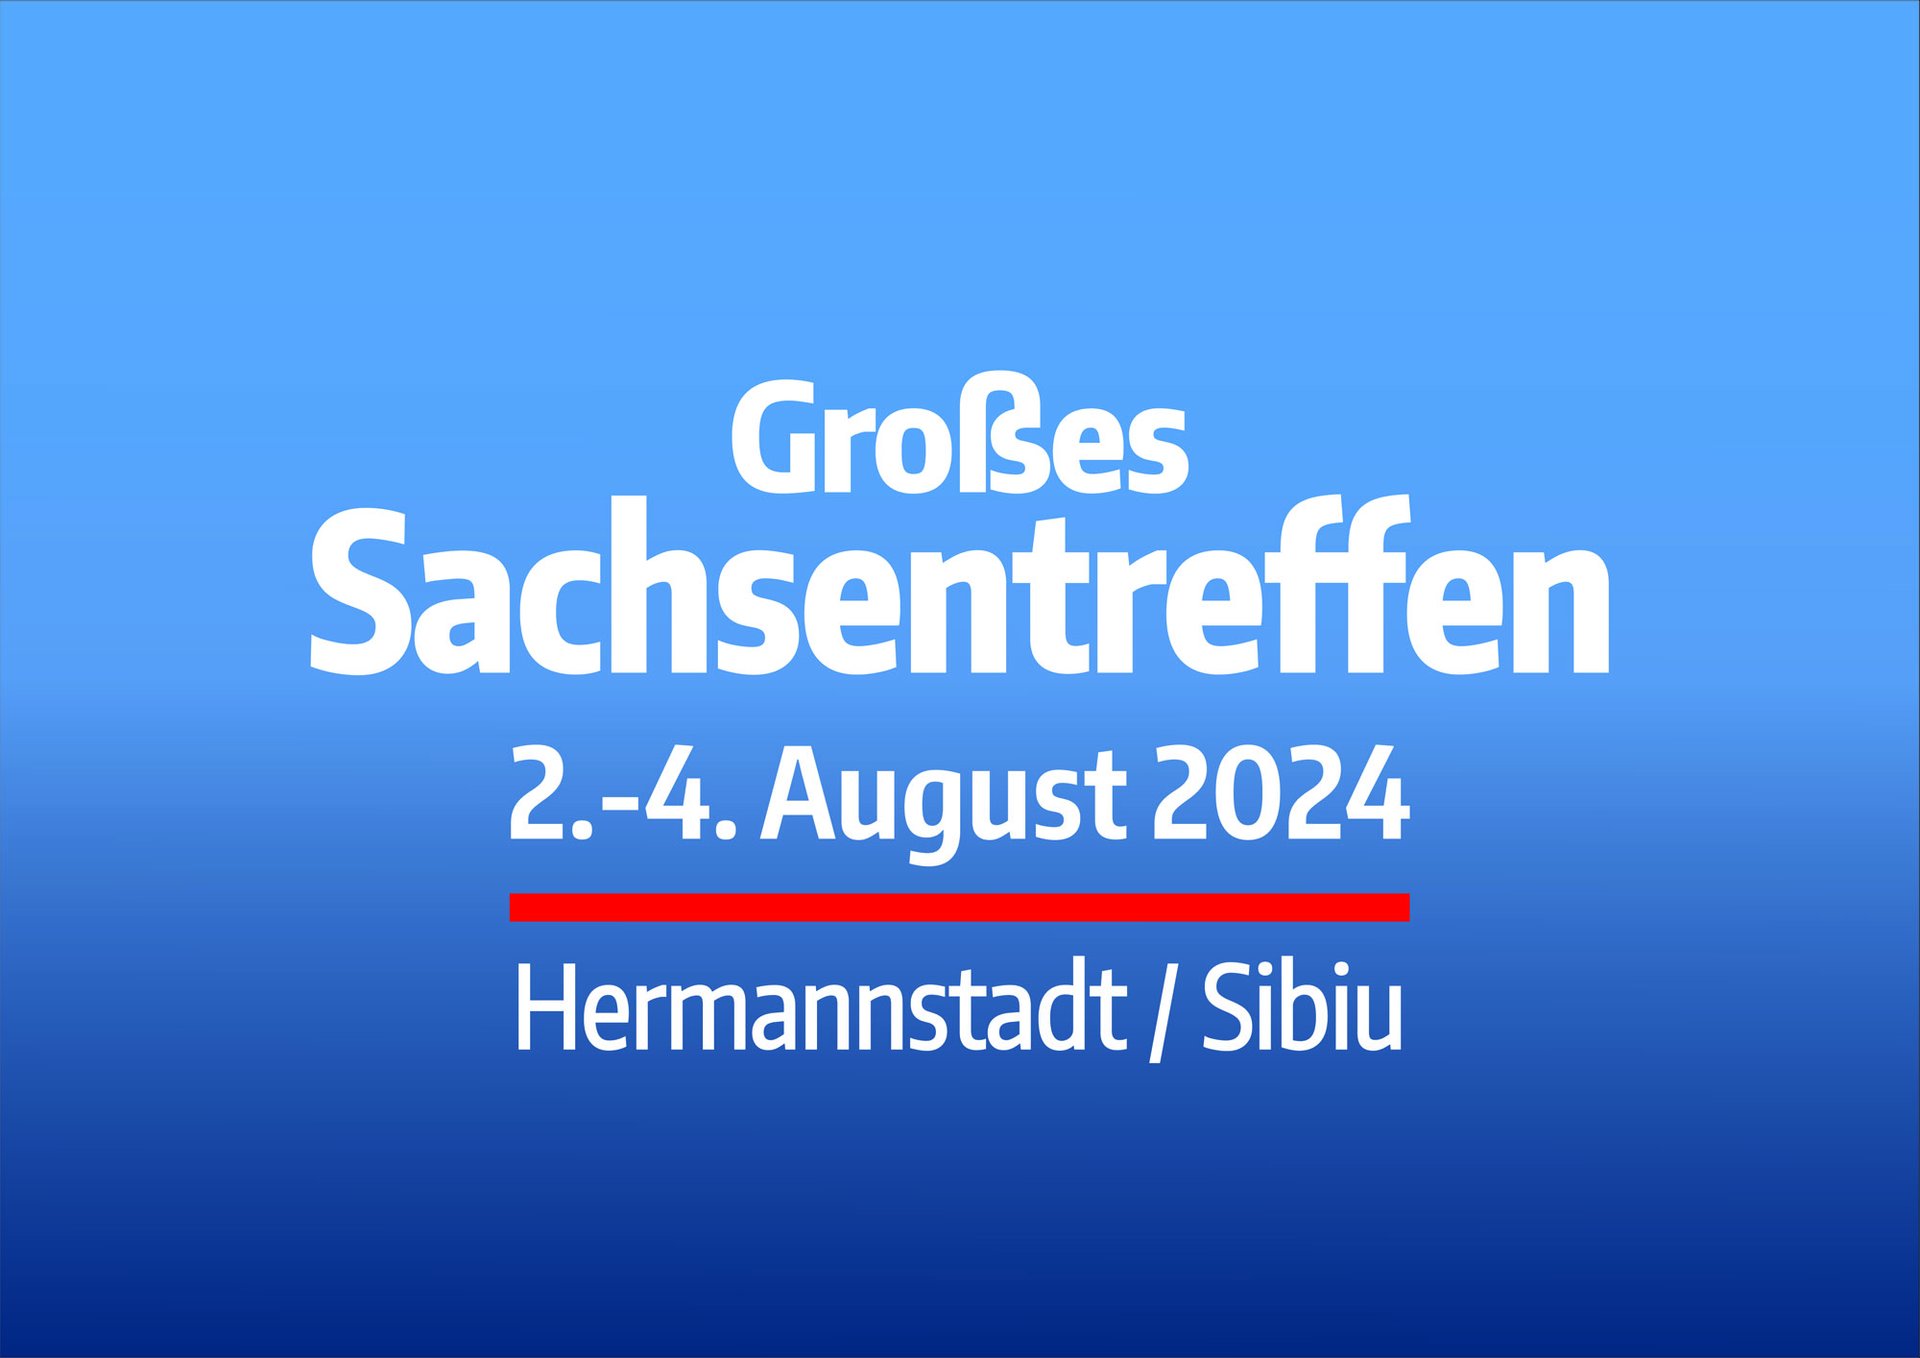 Nicht verpassen: Anmeldefristen für Großes Sachsentreffen 2024!